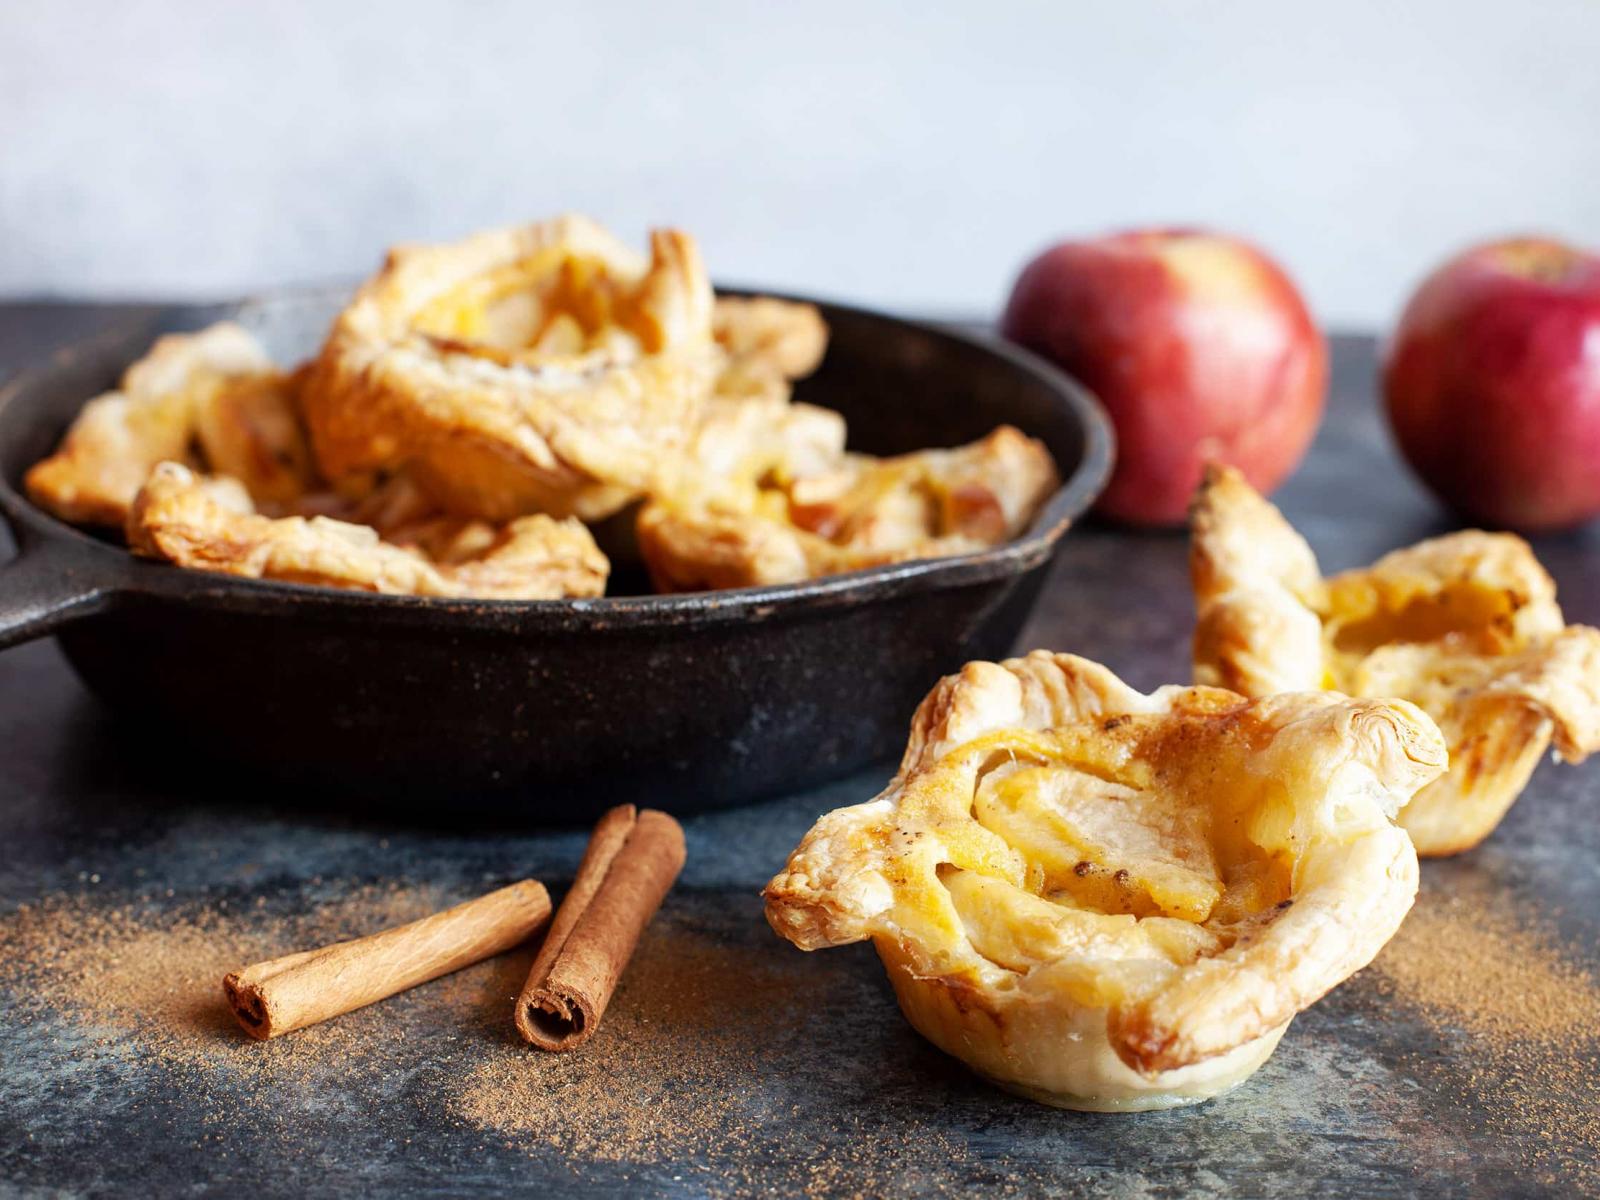 Baluchons de pommes en pâtissière - Apple Pastry Baluchon